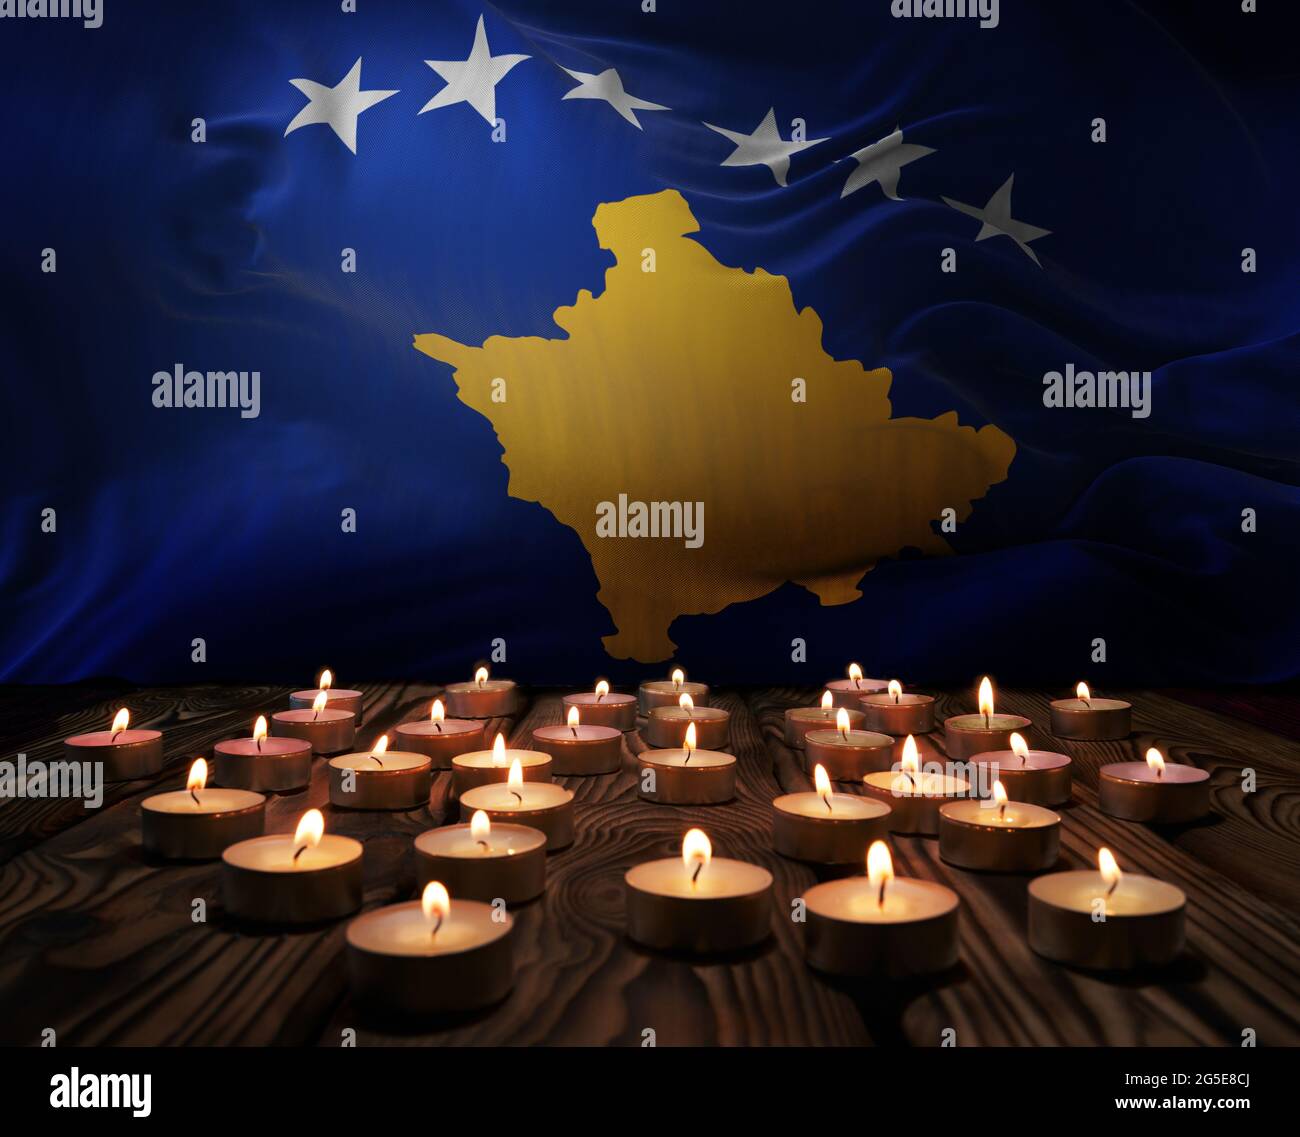 Deuil de bougies allumées sur le drapeau national du Kosovo. Week-end du souvenir, journée des anciens combattants patriotes, Journée nationale du souvenir. Gravure c Banque D'Images